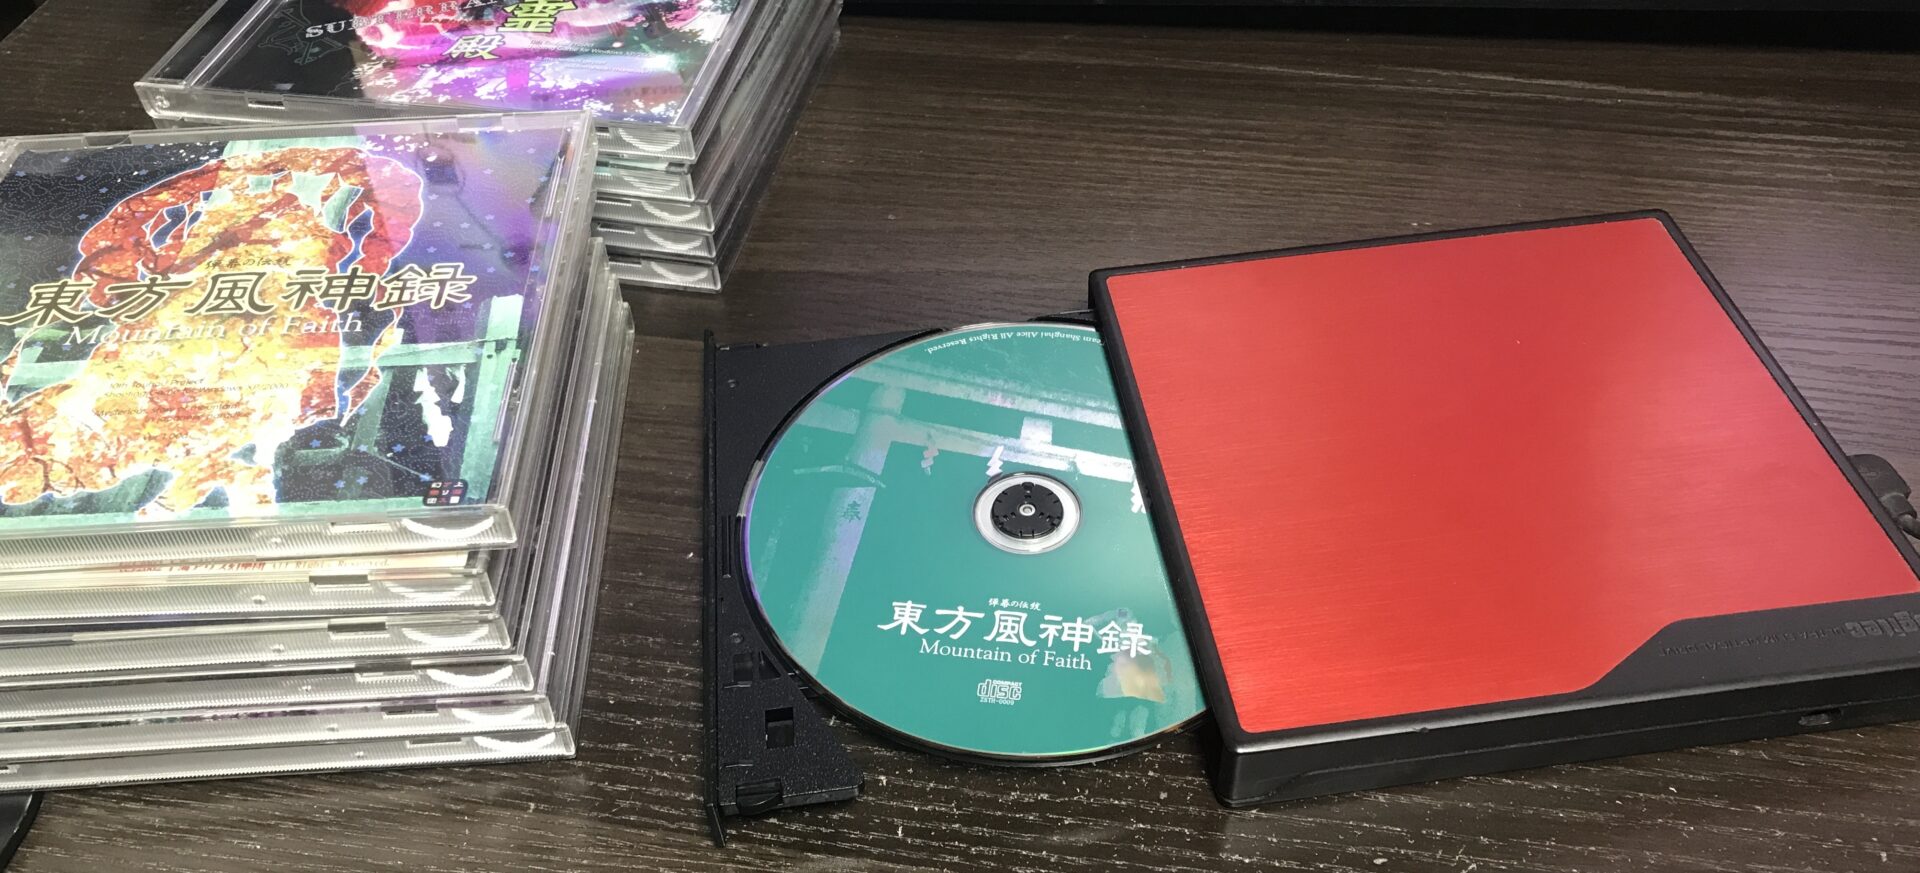 東方Project ゲーム CD ゲームコントローラー - ソフトウェア